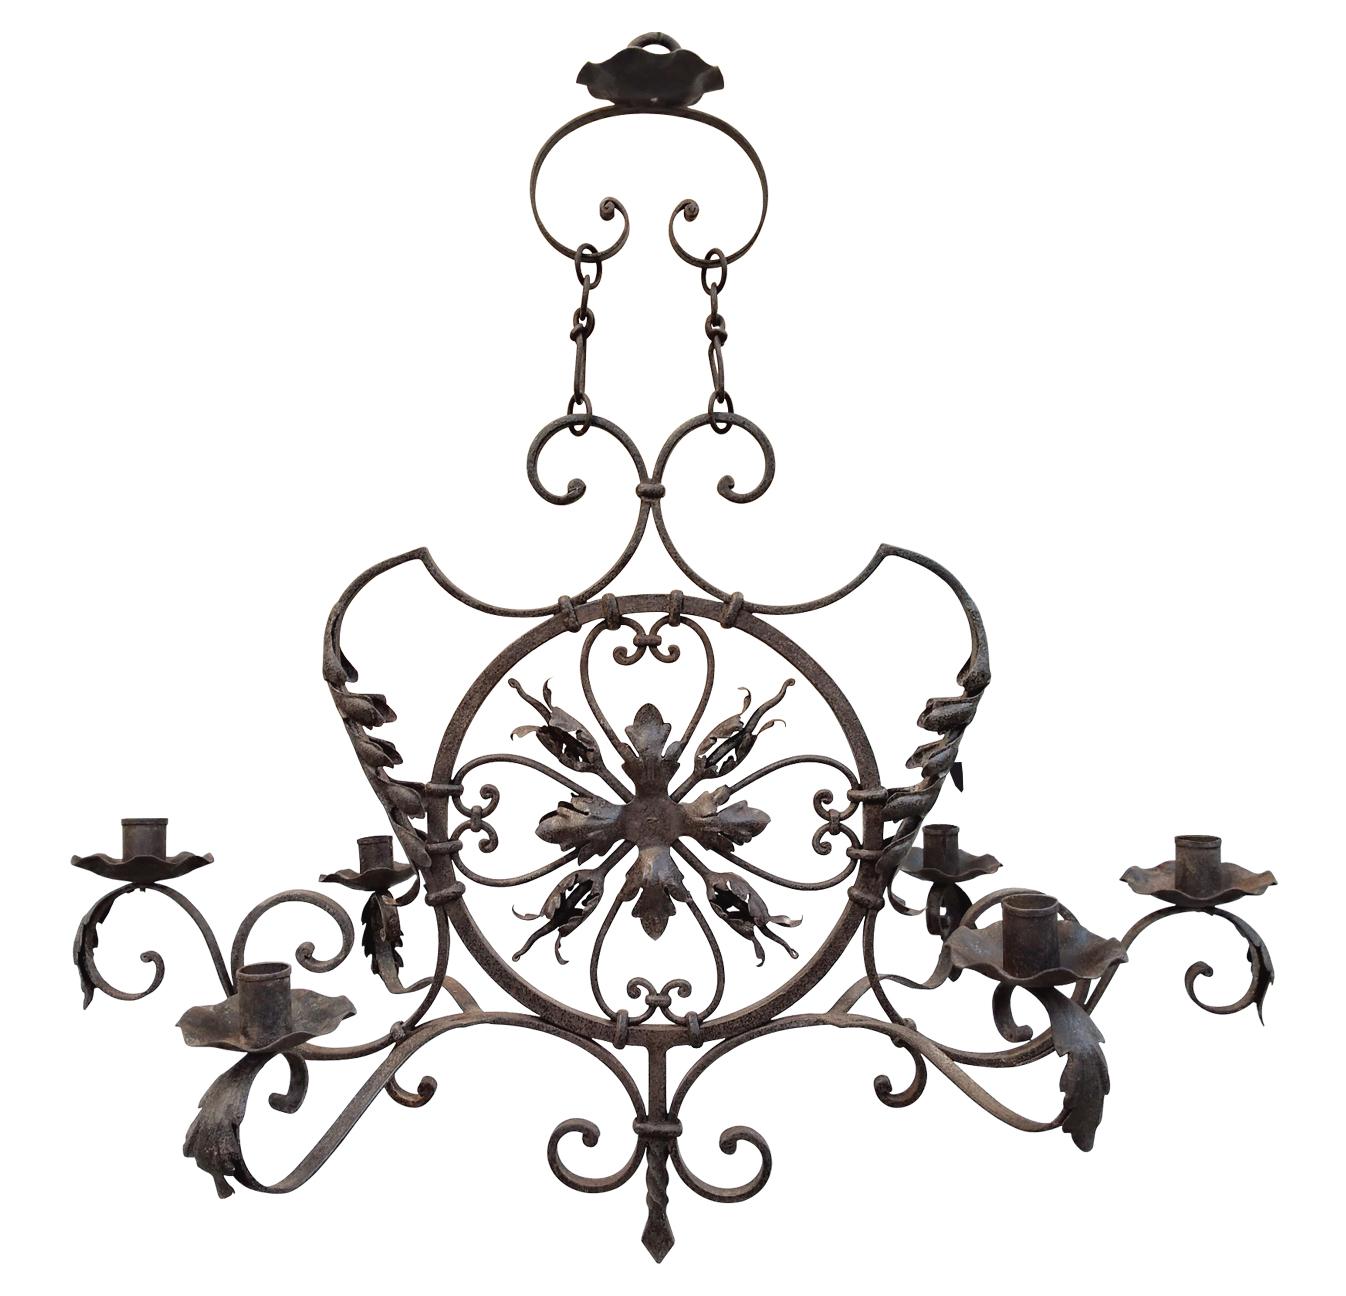 Grand lustre décoratif en fer forgé, fin du 19e siècle. Forgé en France, vers 1890, le grand lustre peut recevoir 6 bougies (bougies non fournies). Sur des formes ondulées, le lustre est décoré de feuilles et de fleurs en fer forgé. Le lustre est en